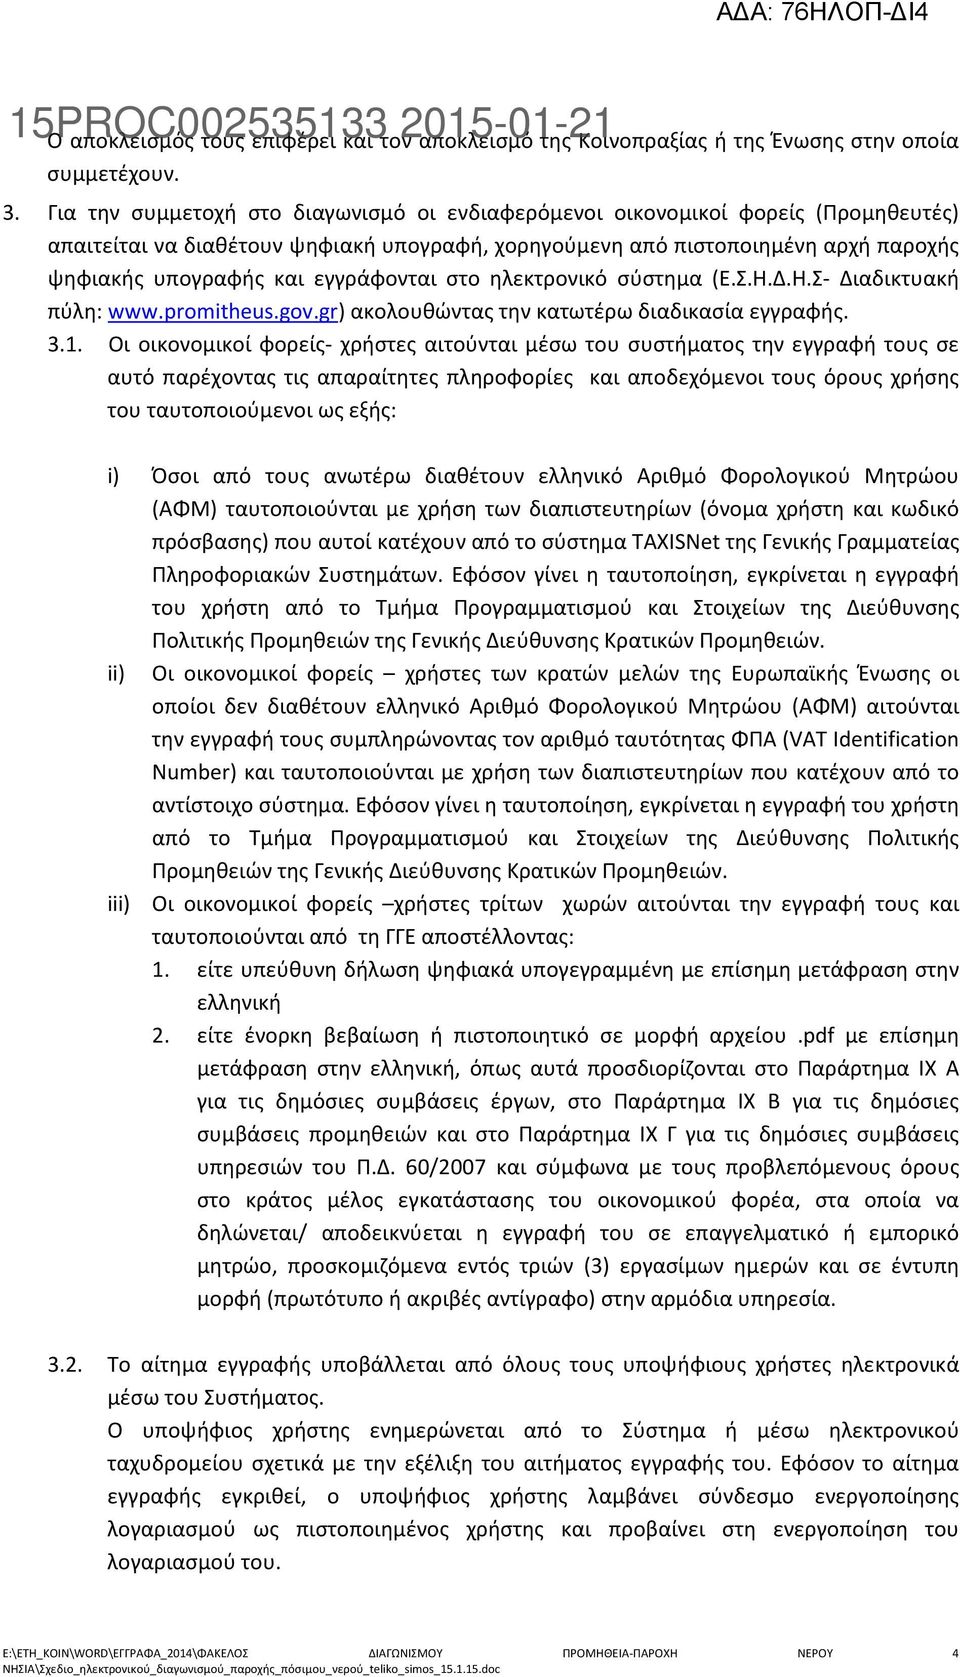 εγγράφονται στο ηλεκτρονικό σύστημα (Ε.Σ.Η.Δ.Η.Σ- Διαδικτυακή πύλη: www.promitheus.gov.gr) ακολουθώντας την κατωτέρω διαδικασία εγγραφής. 3.1.